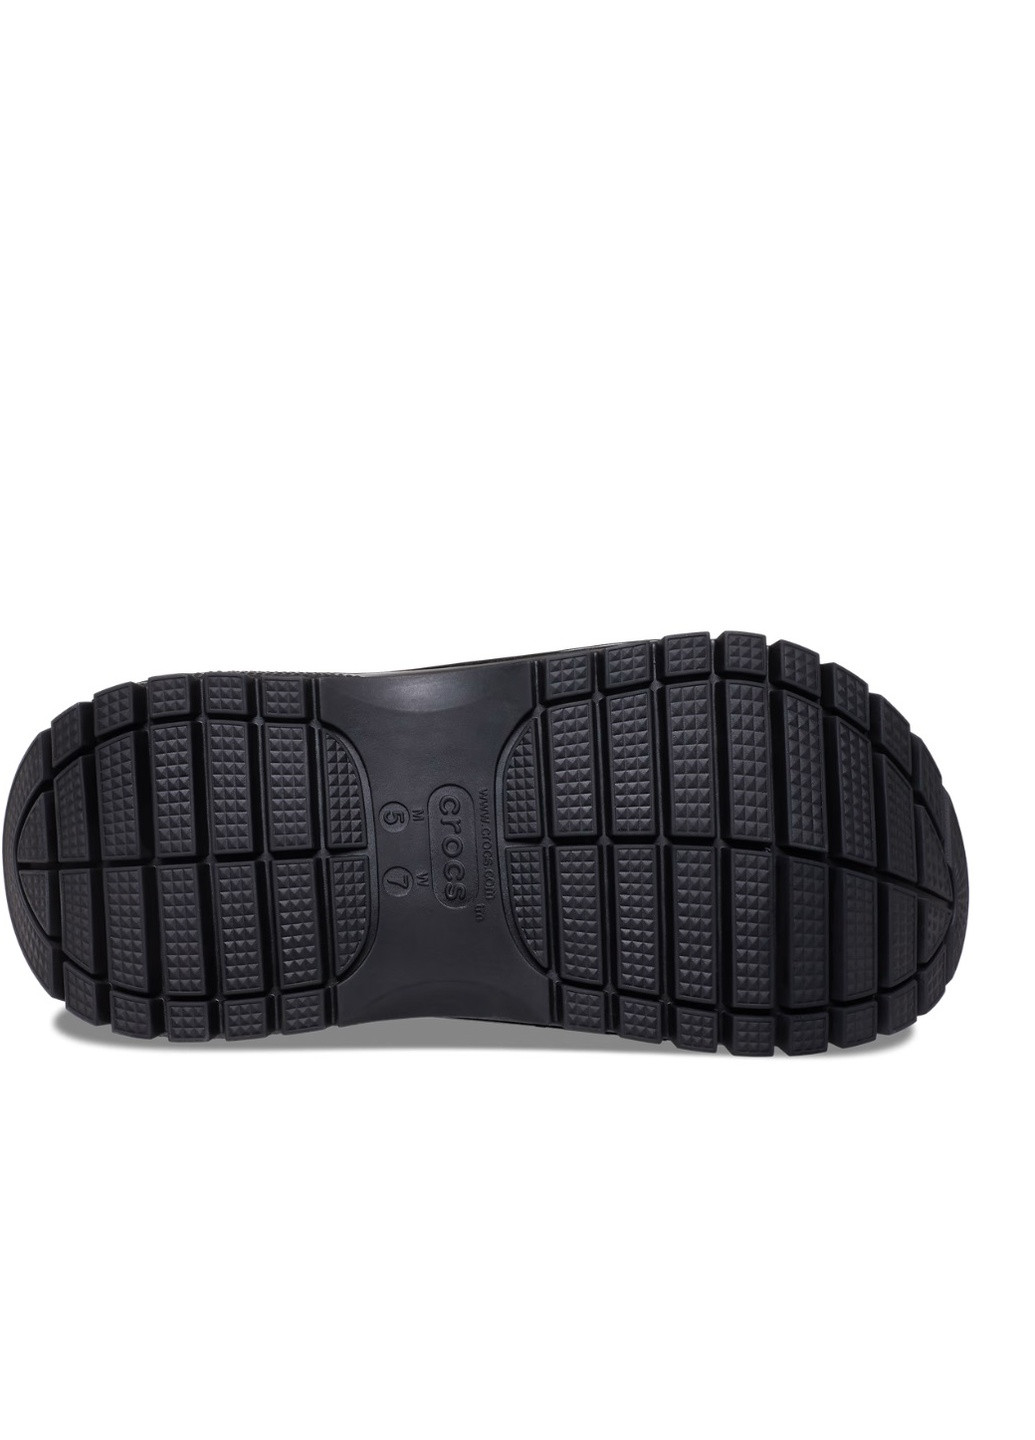 Черные сабо на высокой платформе Crocs на высоком каблуке